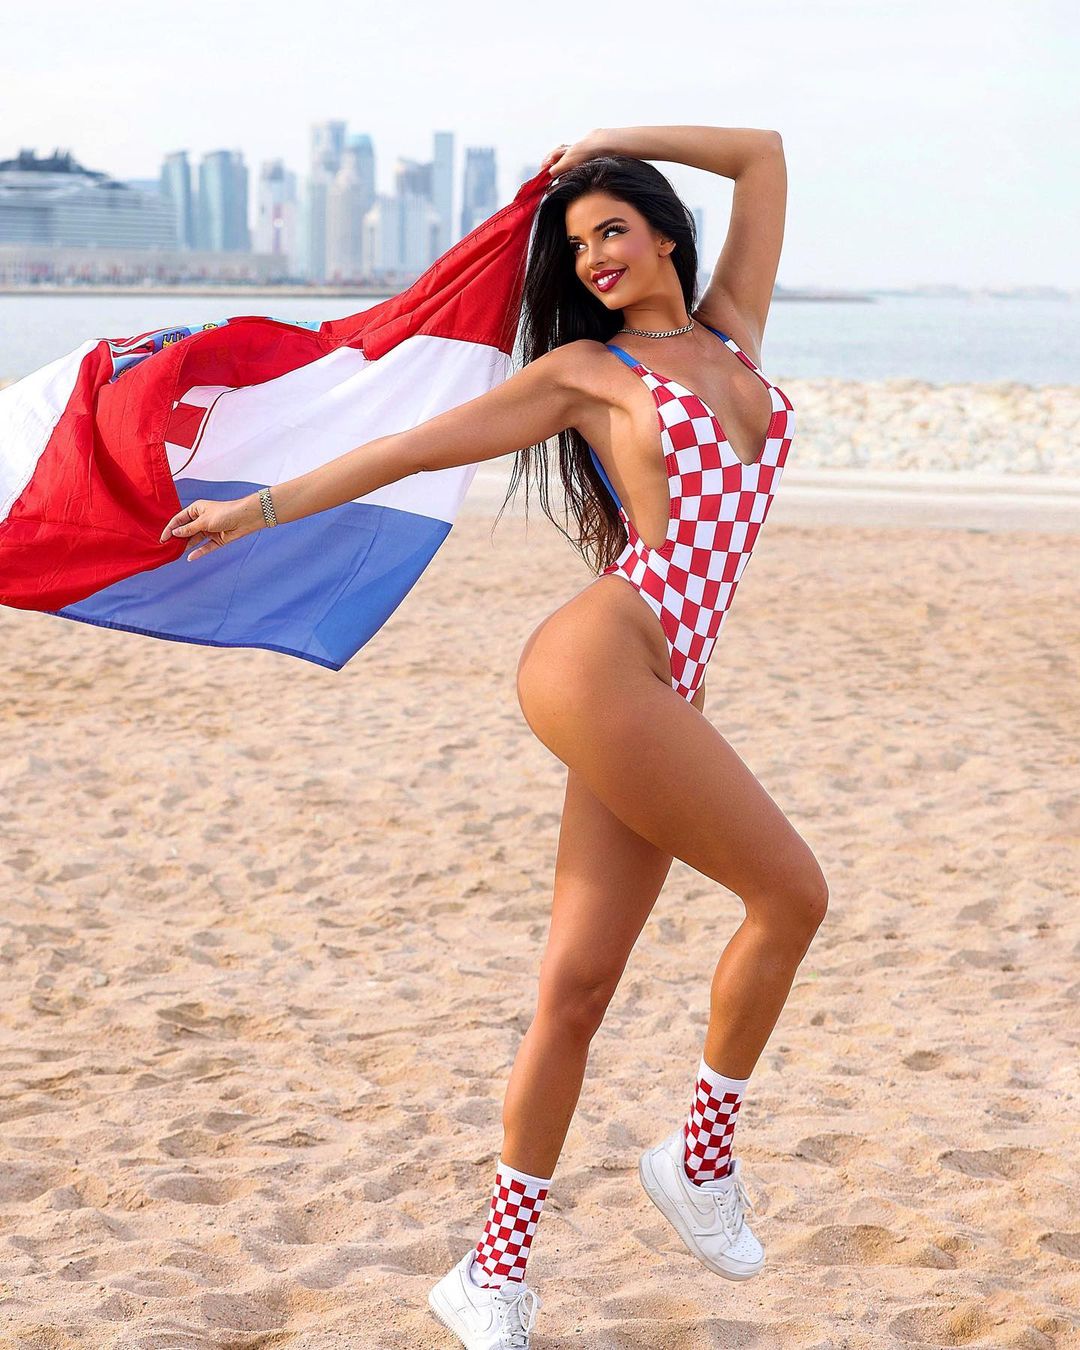 Fan nữ hot nhất World Cup đăng ảnh tiếp lửa cho ĐT Croatia - Ảnh 3.